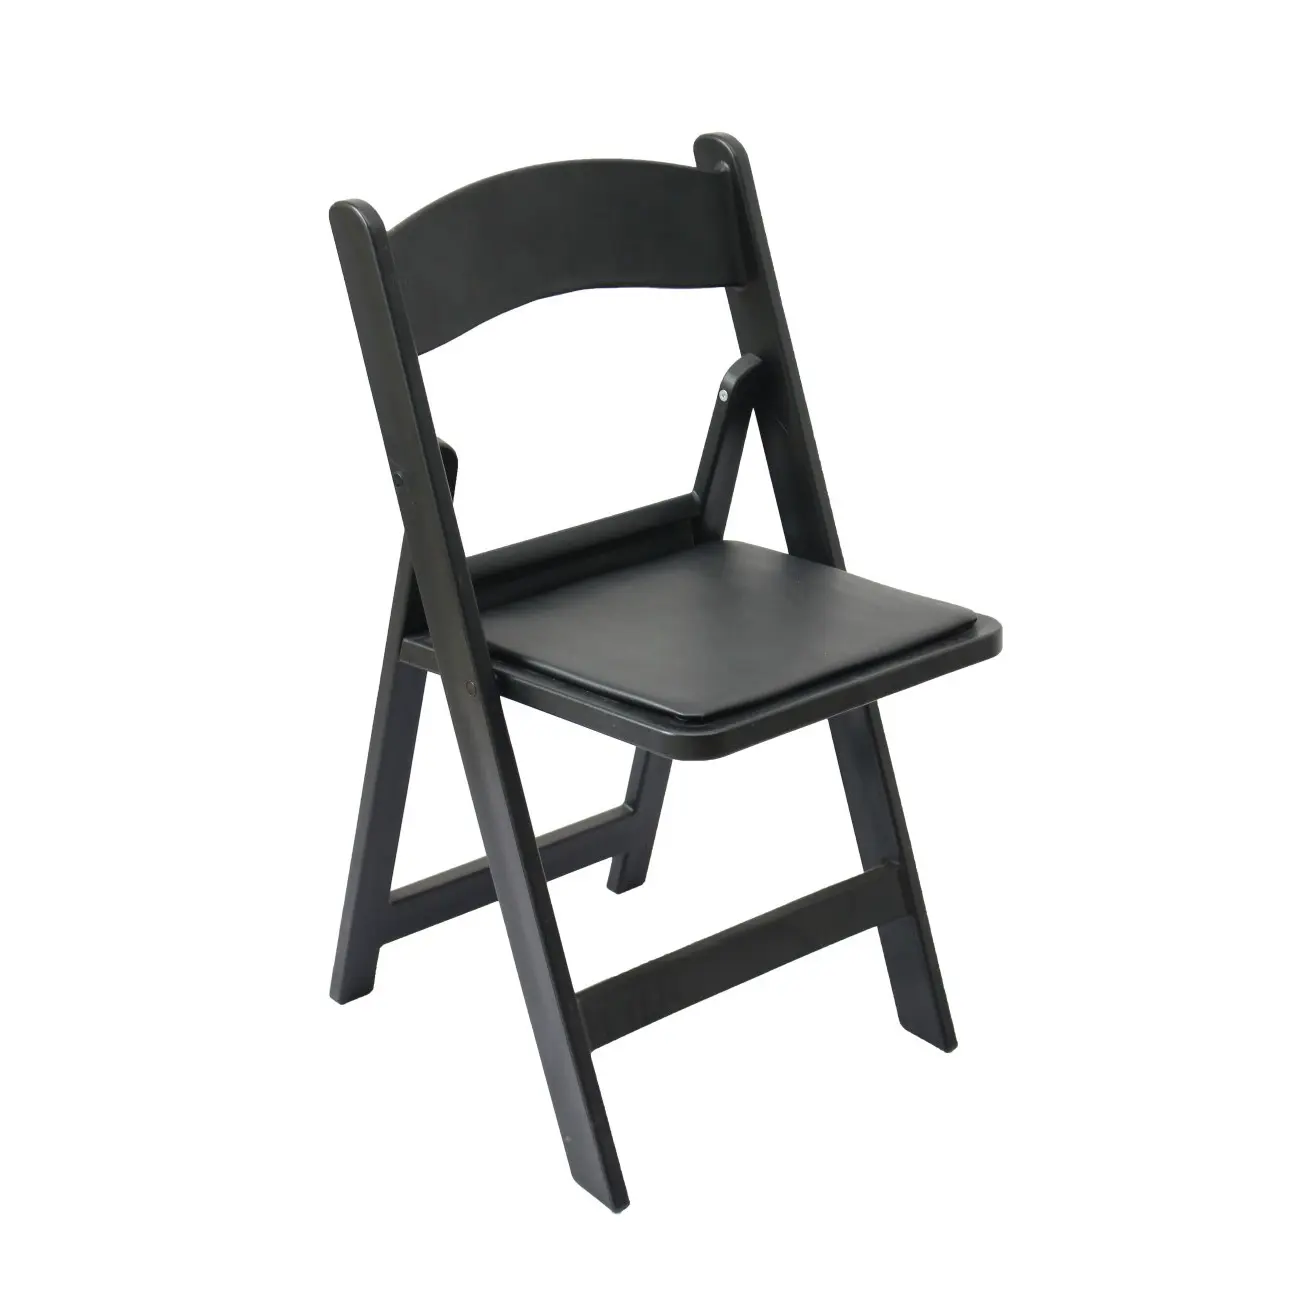 Cadeira dobrável de plástico da resina da cor preta, barata, ao ar livre, cadeira para o hotel, eventos de casamento, aluguer